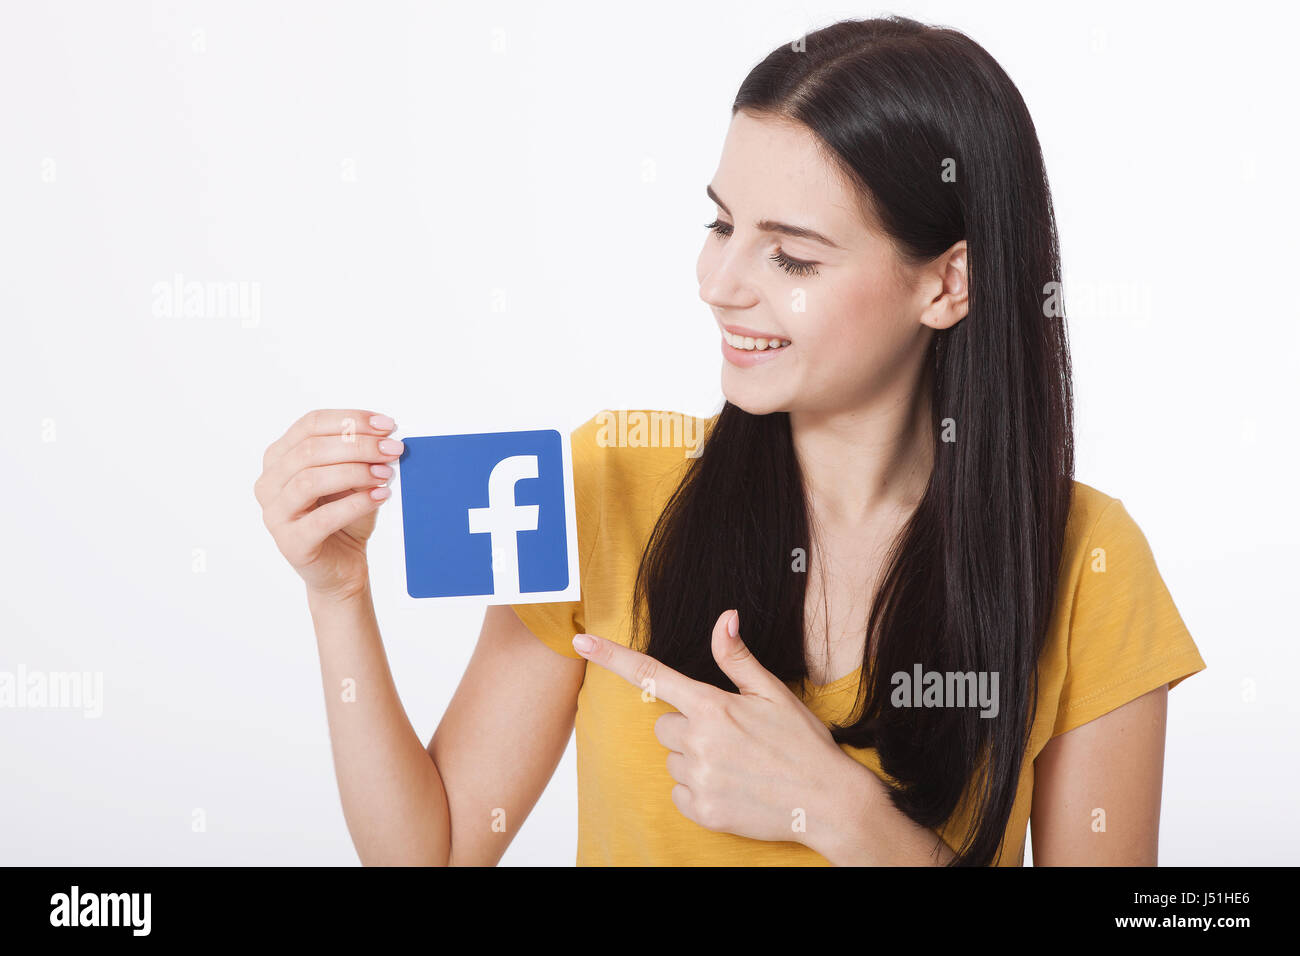 KIEV, UCRAINA - 22 agosto 2016: Donna mani tenendo l'icona Facebook segno stampato su carta su sfondo bianco. Facebook è ben noto servizio di social networking. Foto Stock